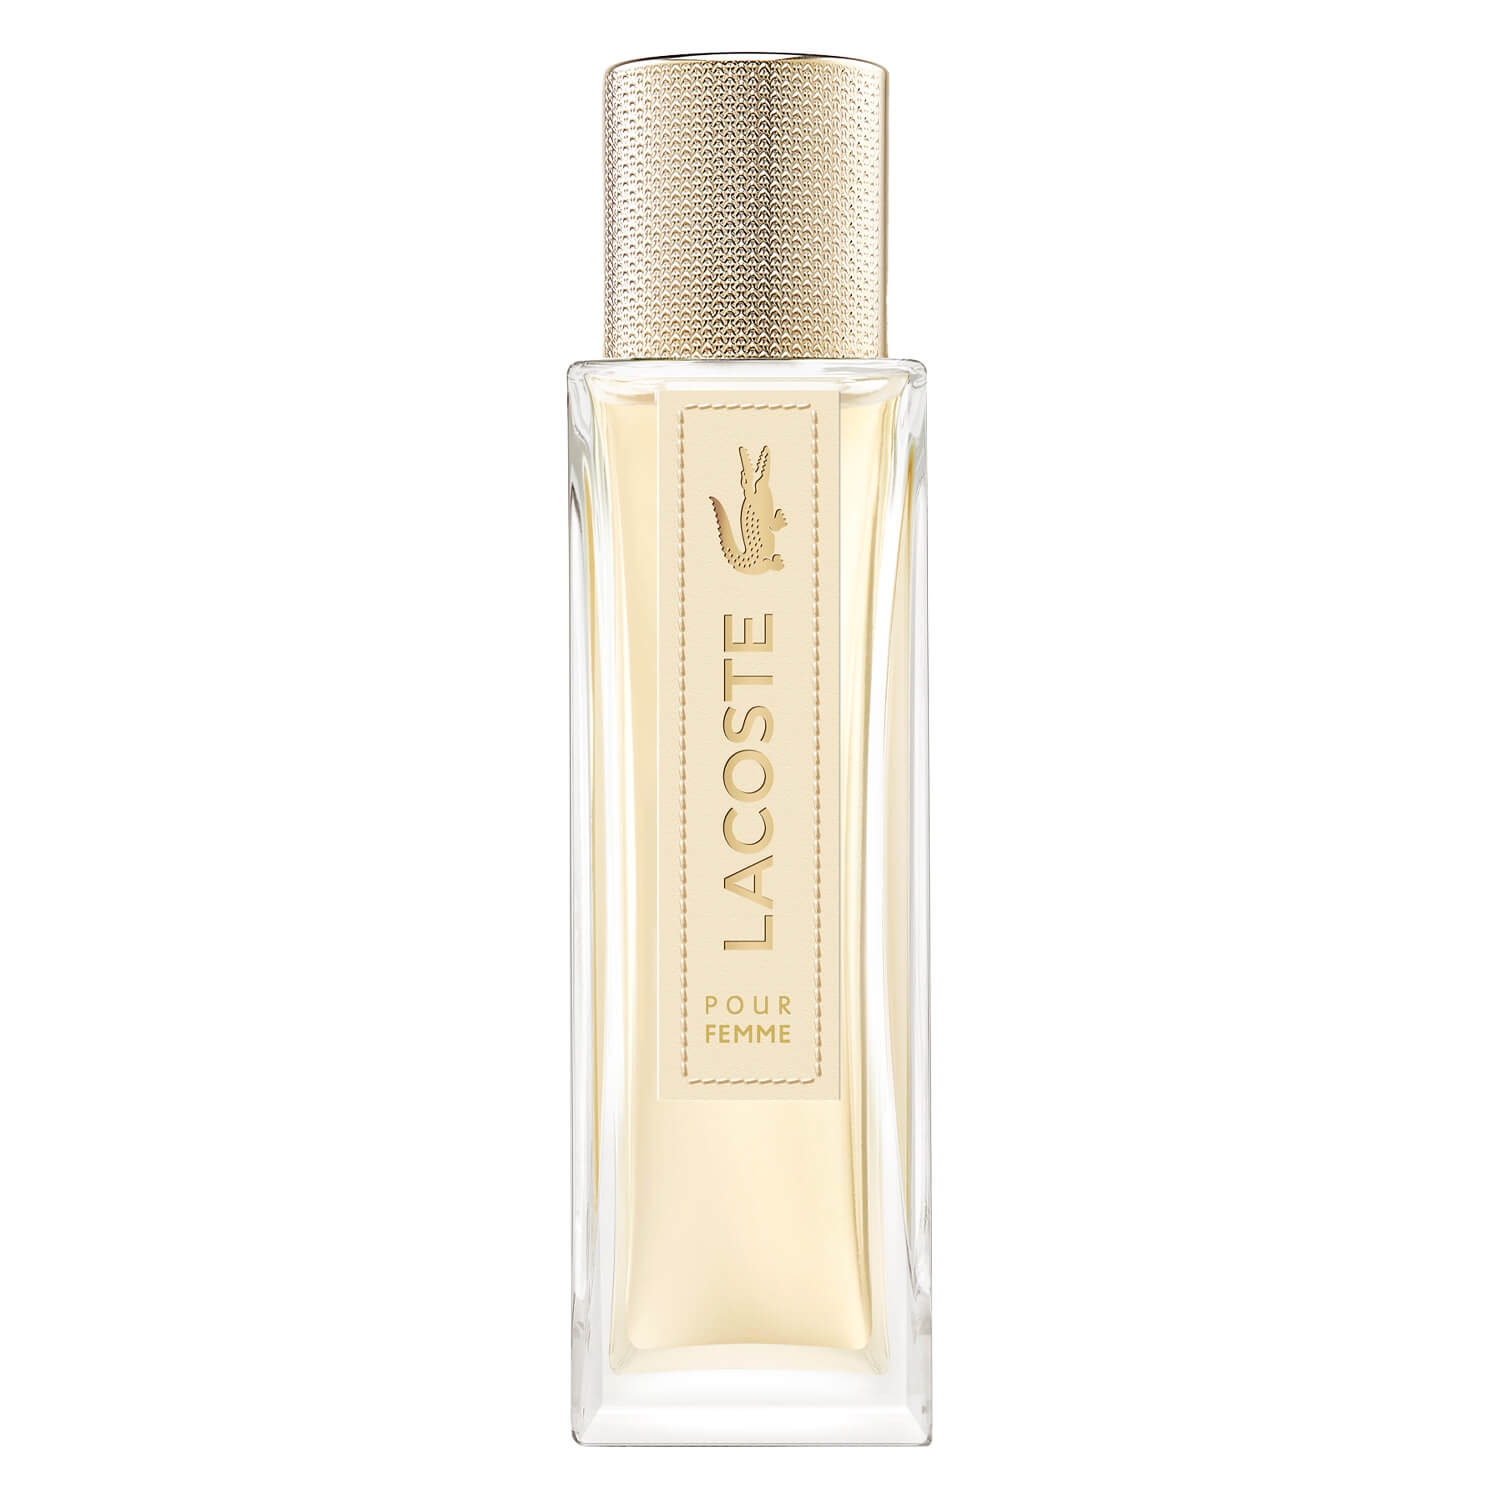 Produktbild von Lacoste Pour Femme - Eau de Parfum Natural Spray